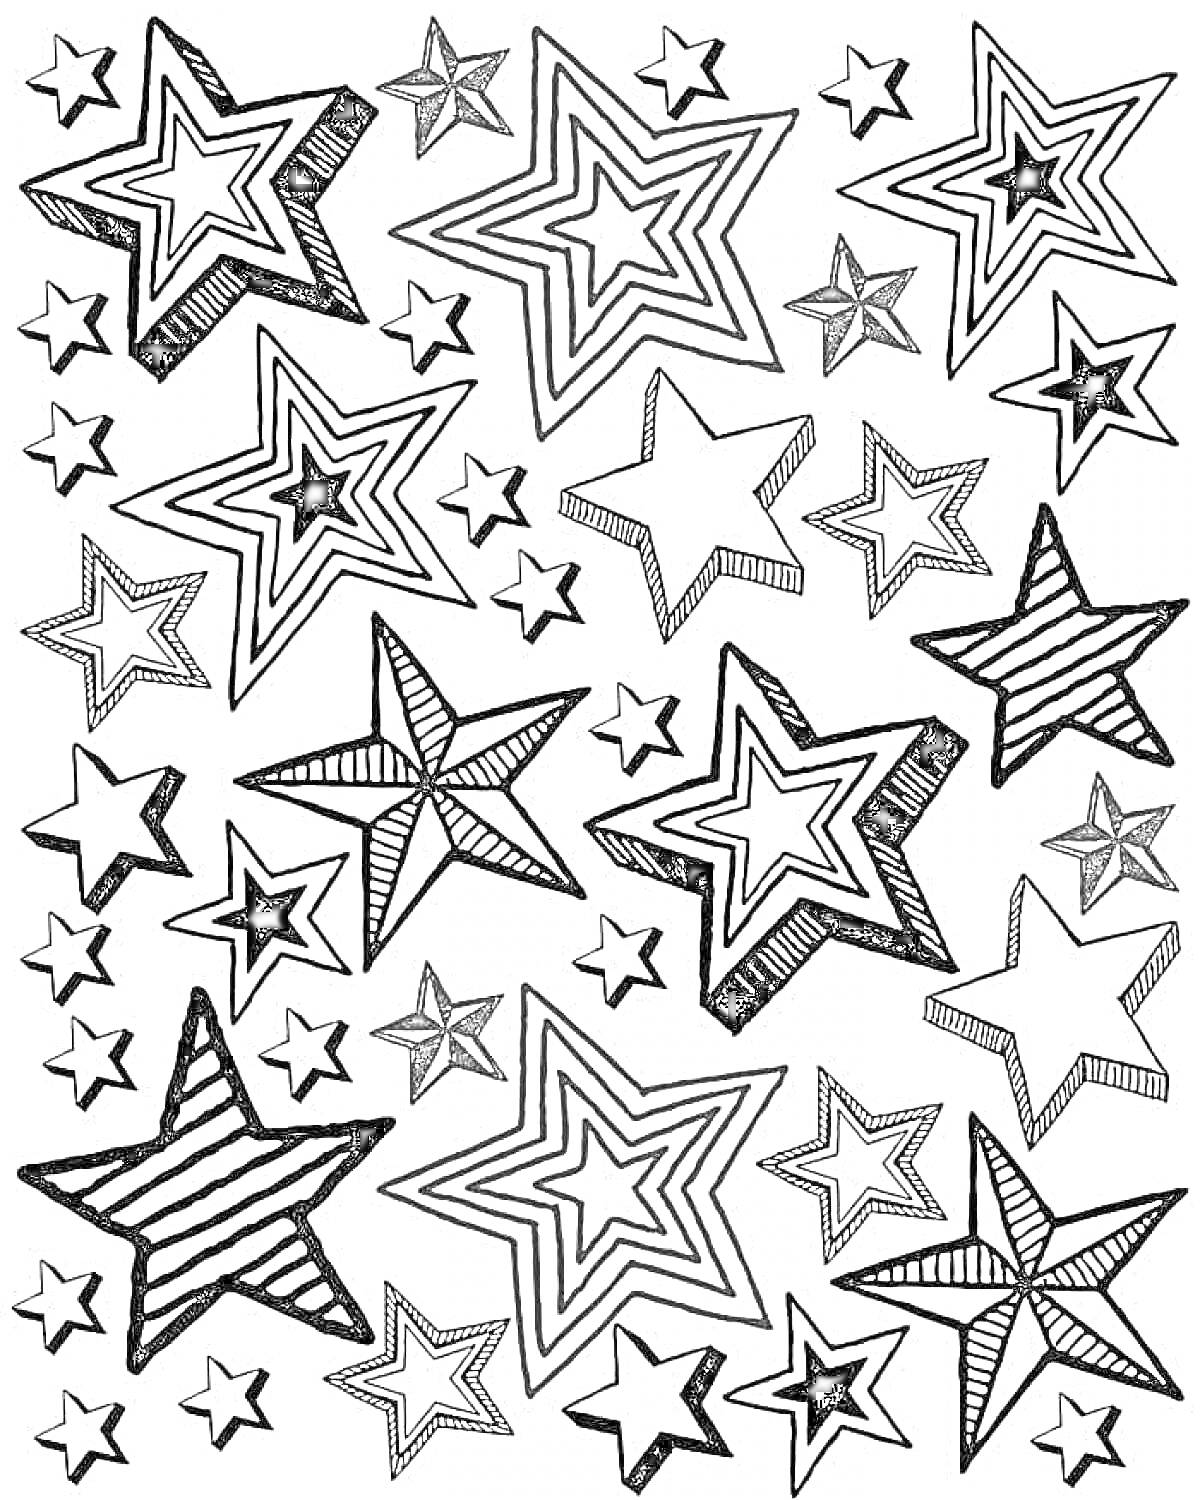 Раскраска Раскраска с разными звездами: большие и маленькие, полосатые и орнаментальные звездочки